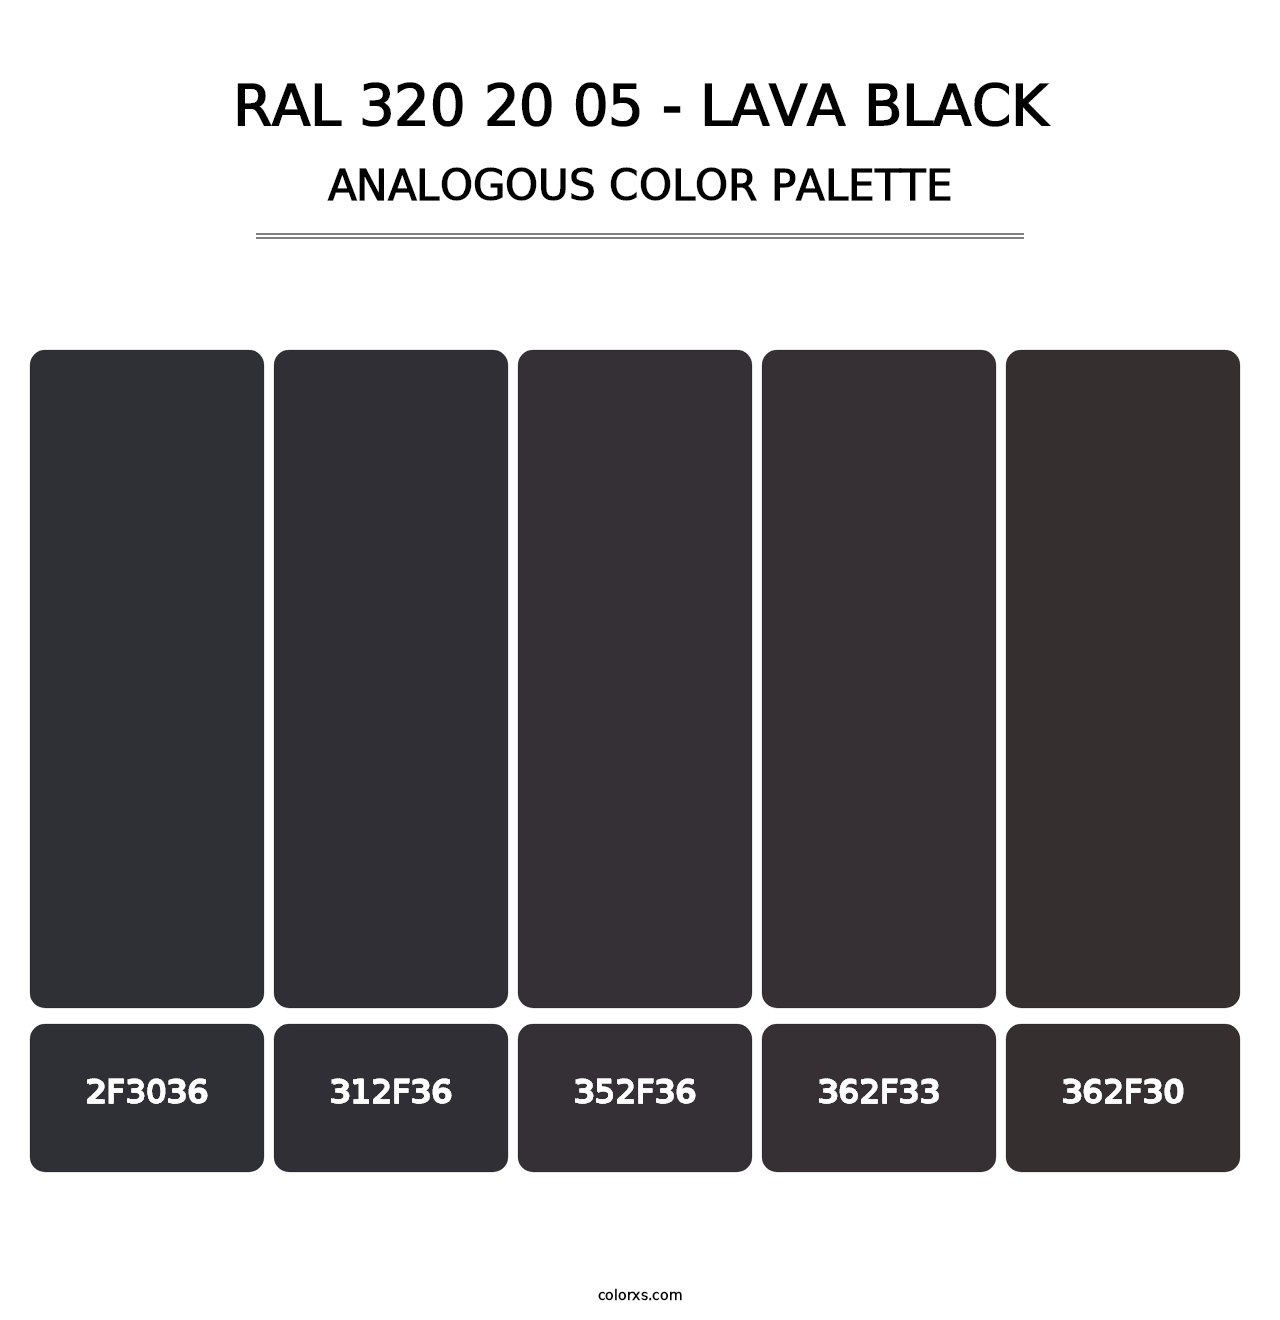 RAL 320 20 05 - Lava Black - Analogous Color Palette